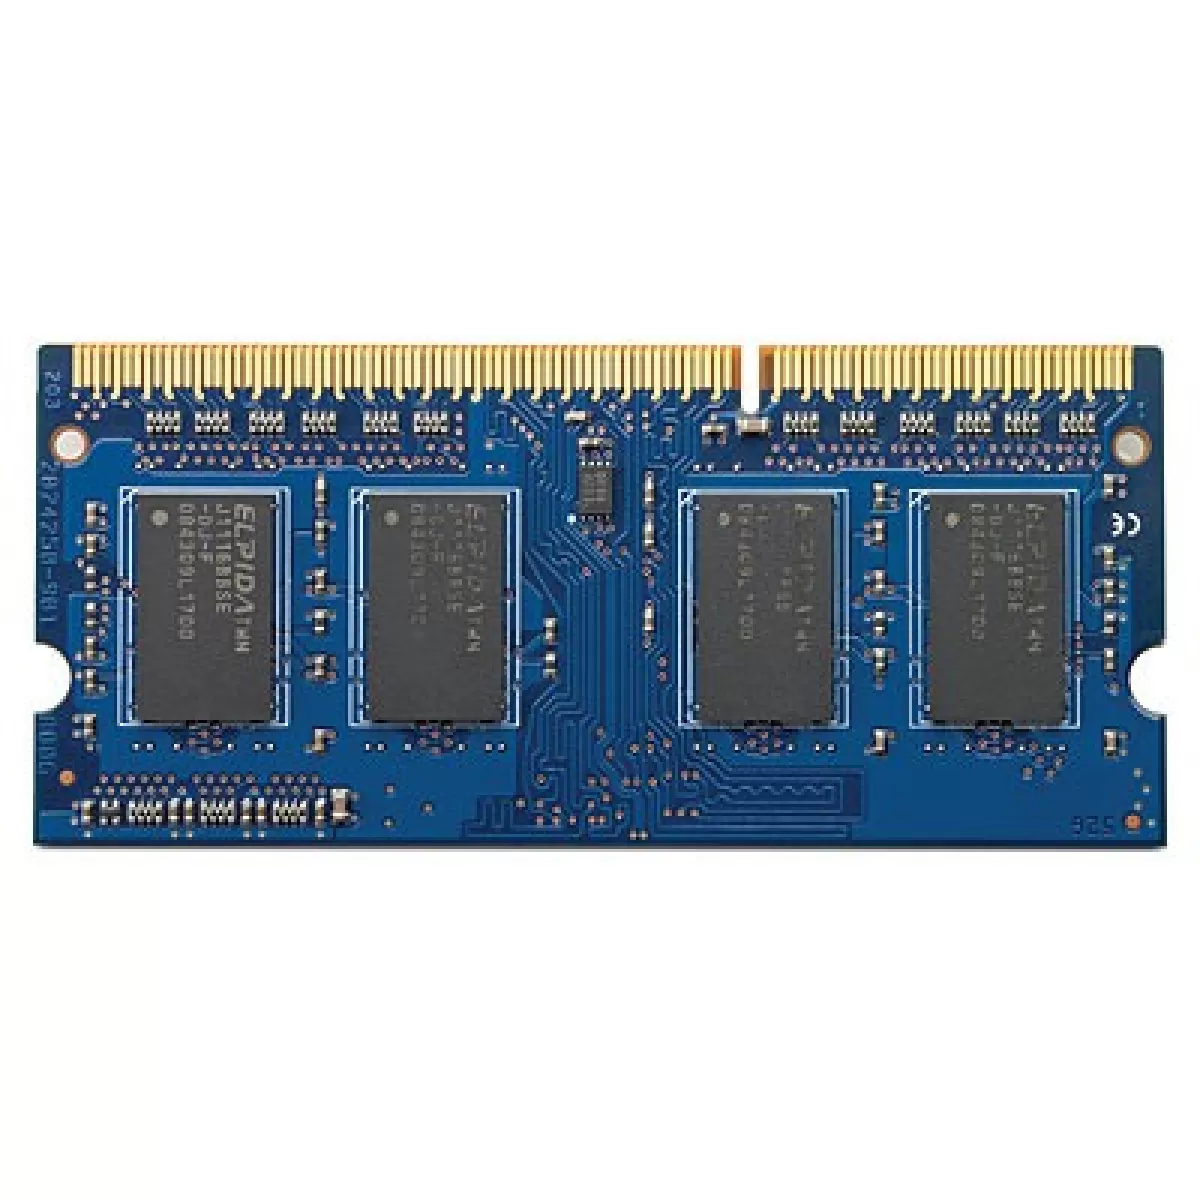 Памет 2GB DDR3L 1600 SODIMM